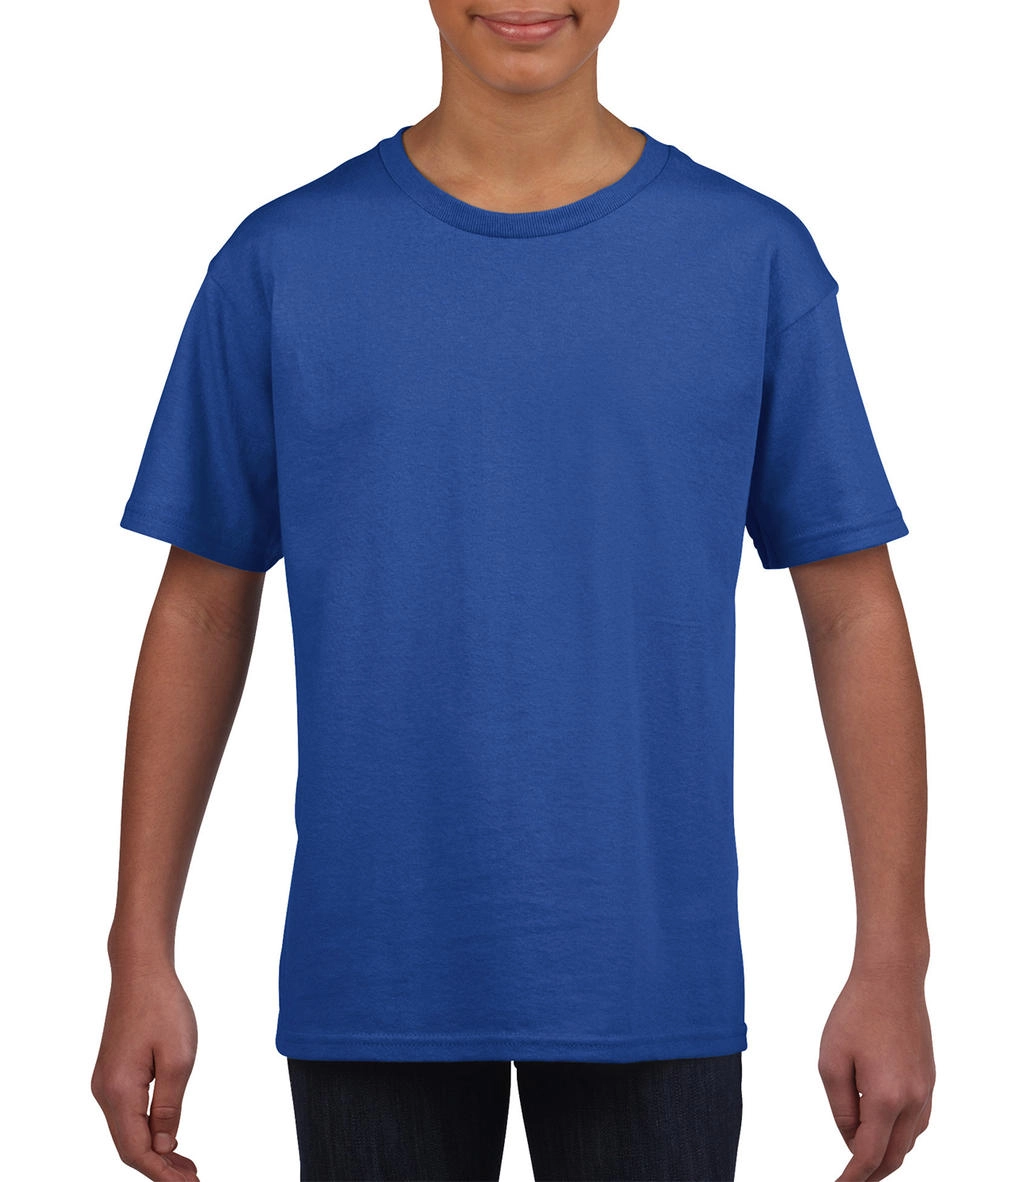 Softstyle® Youth T-Shirt zum Besticken und Bedrucken in der Farbe Royal mit Ihren Logo, Schriftzug oder Motiv.